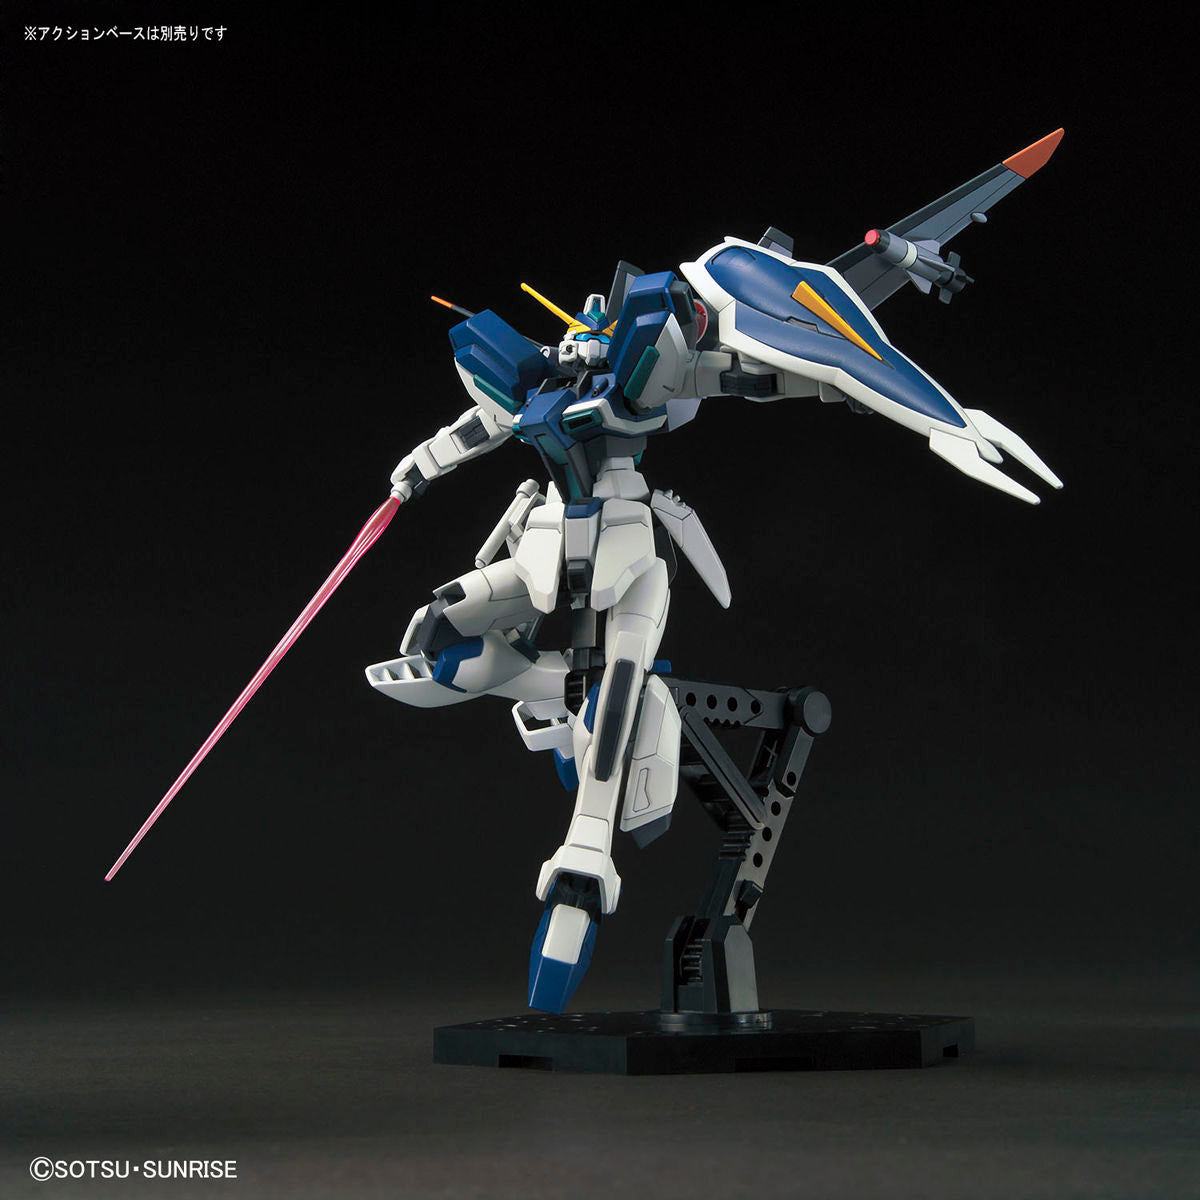 HG Gundam Windam 1/144 - gundam-store.dk